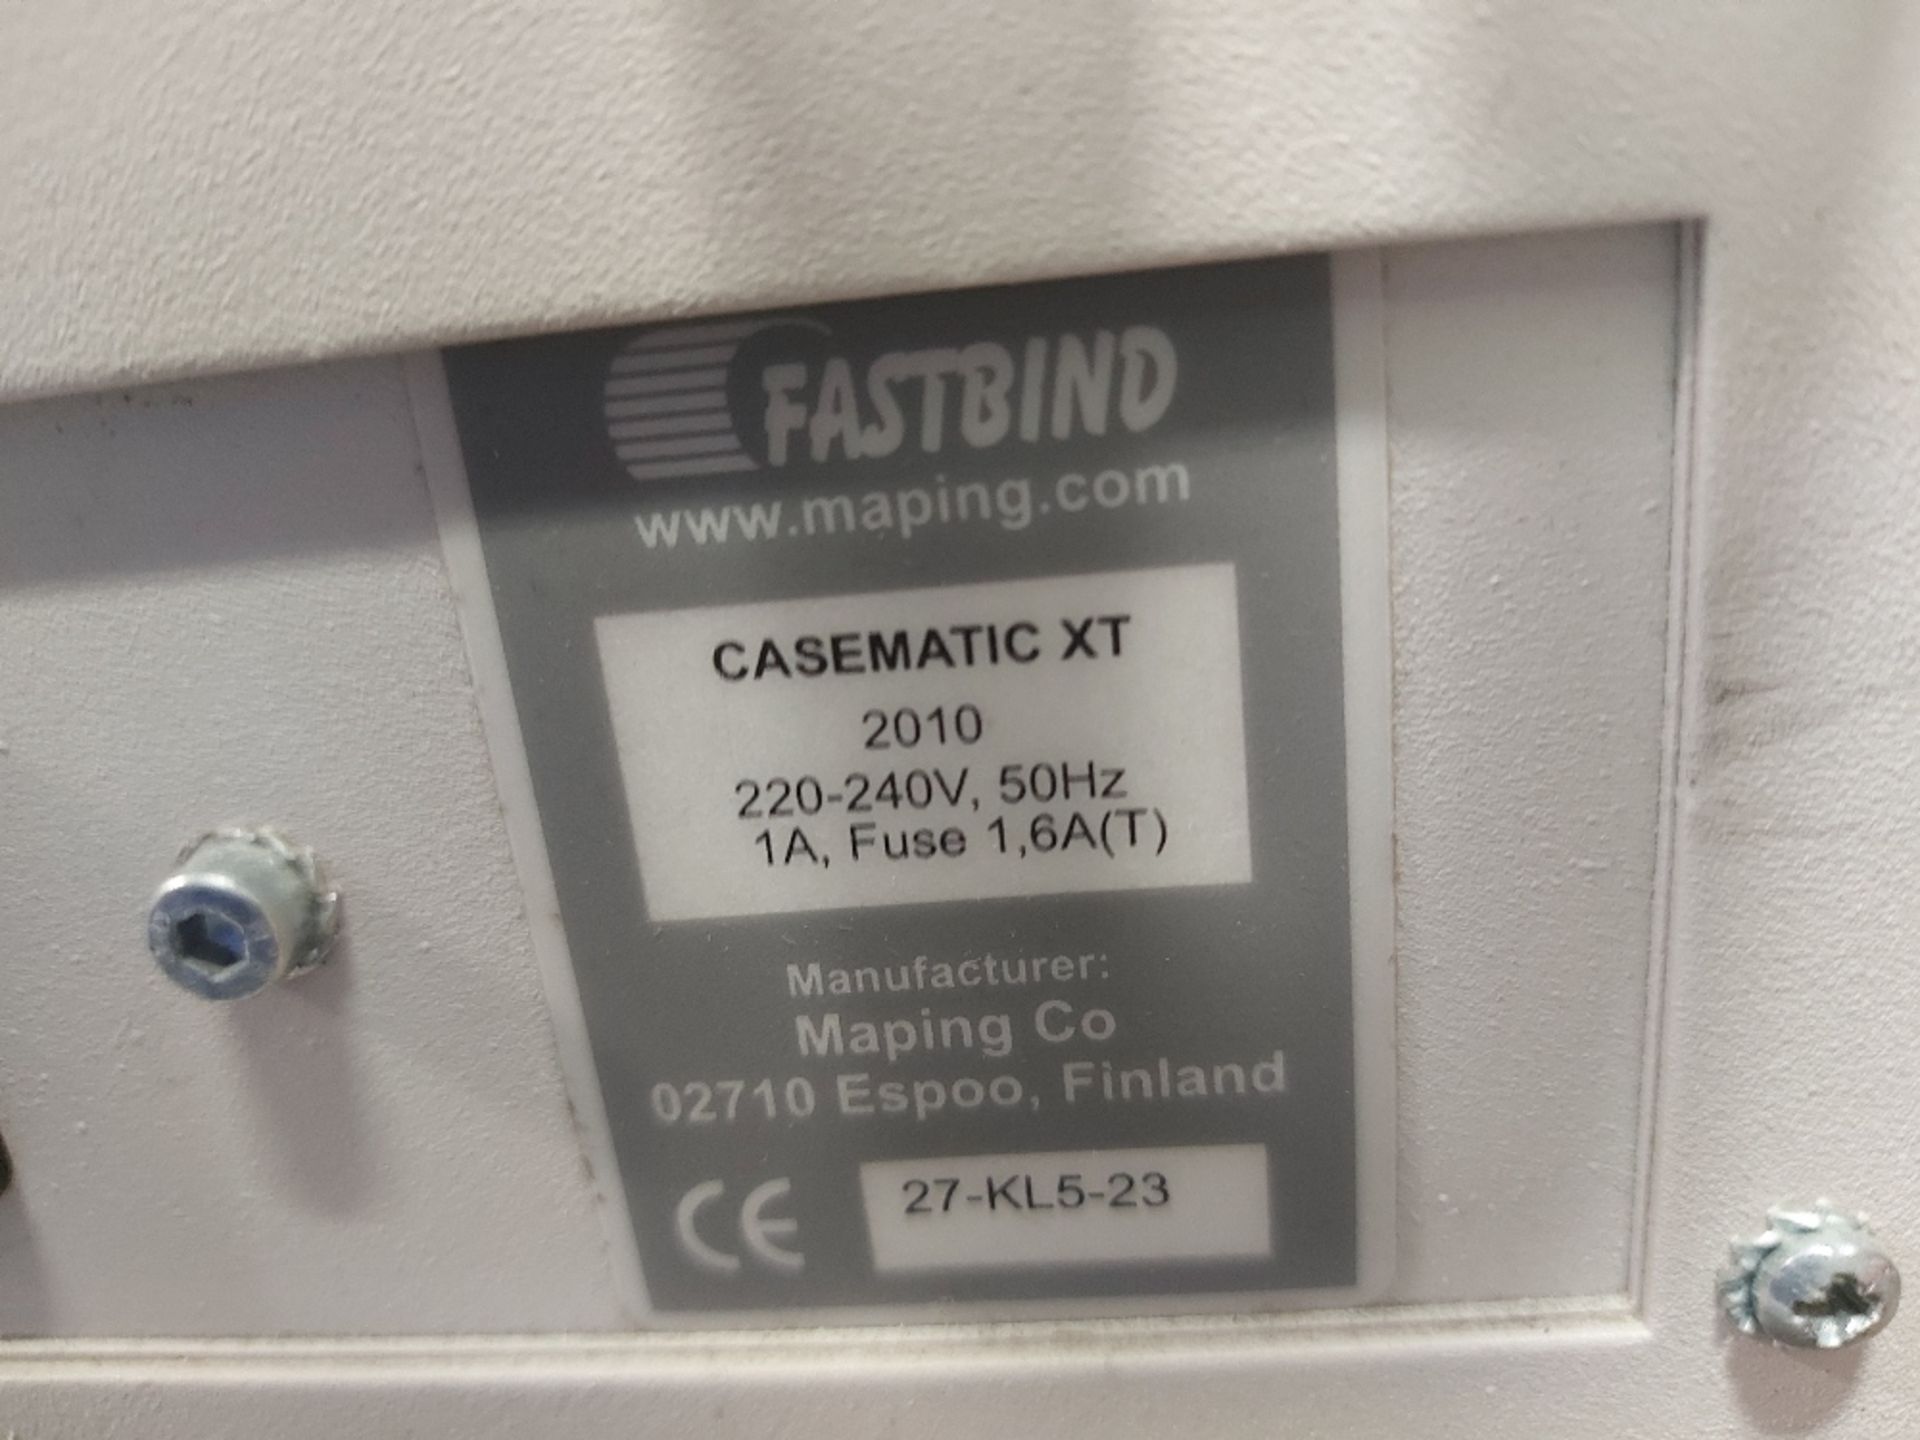 Fastbind Casematic XT Hot Melt Glue Binder - Image 3 of 3